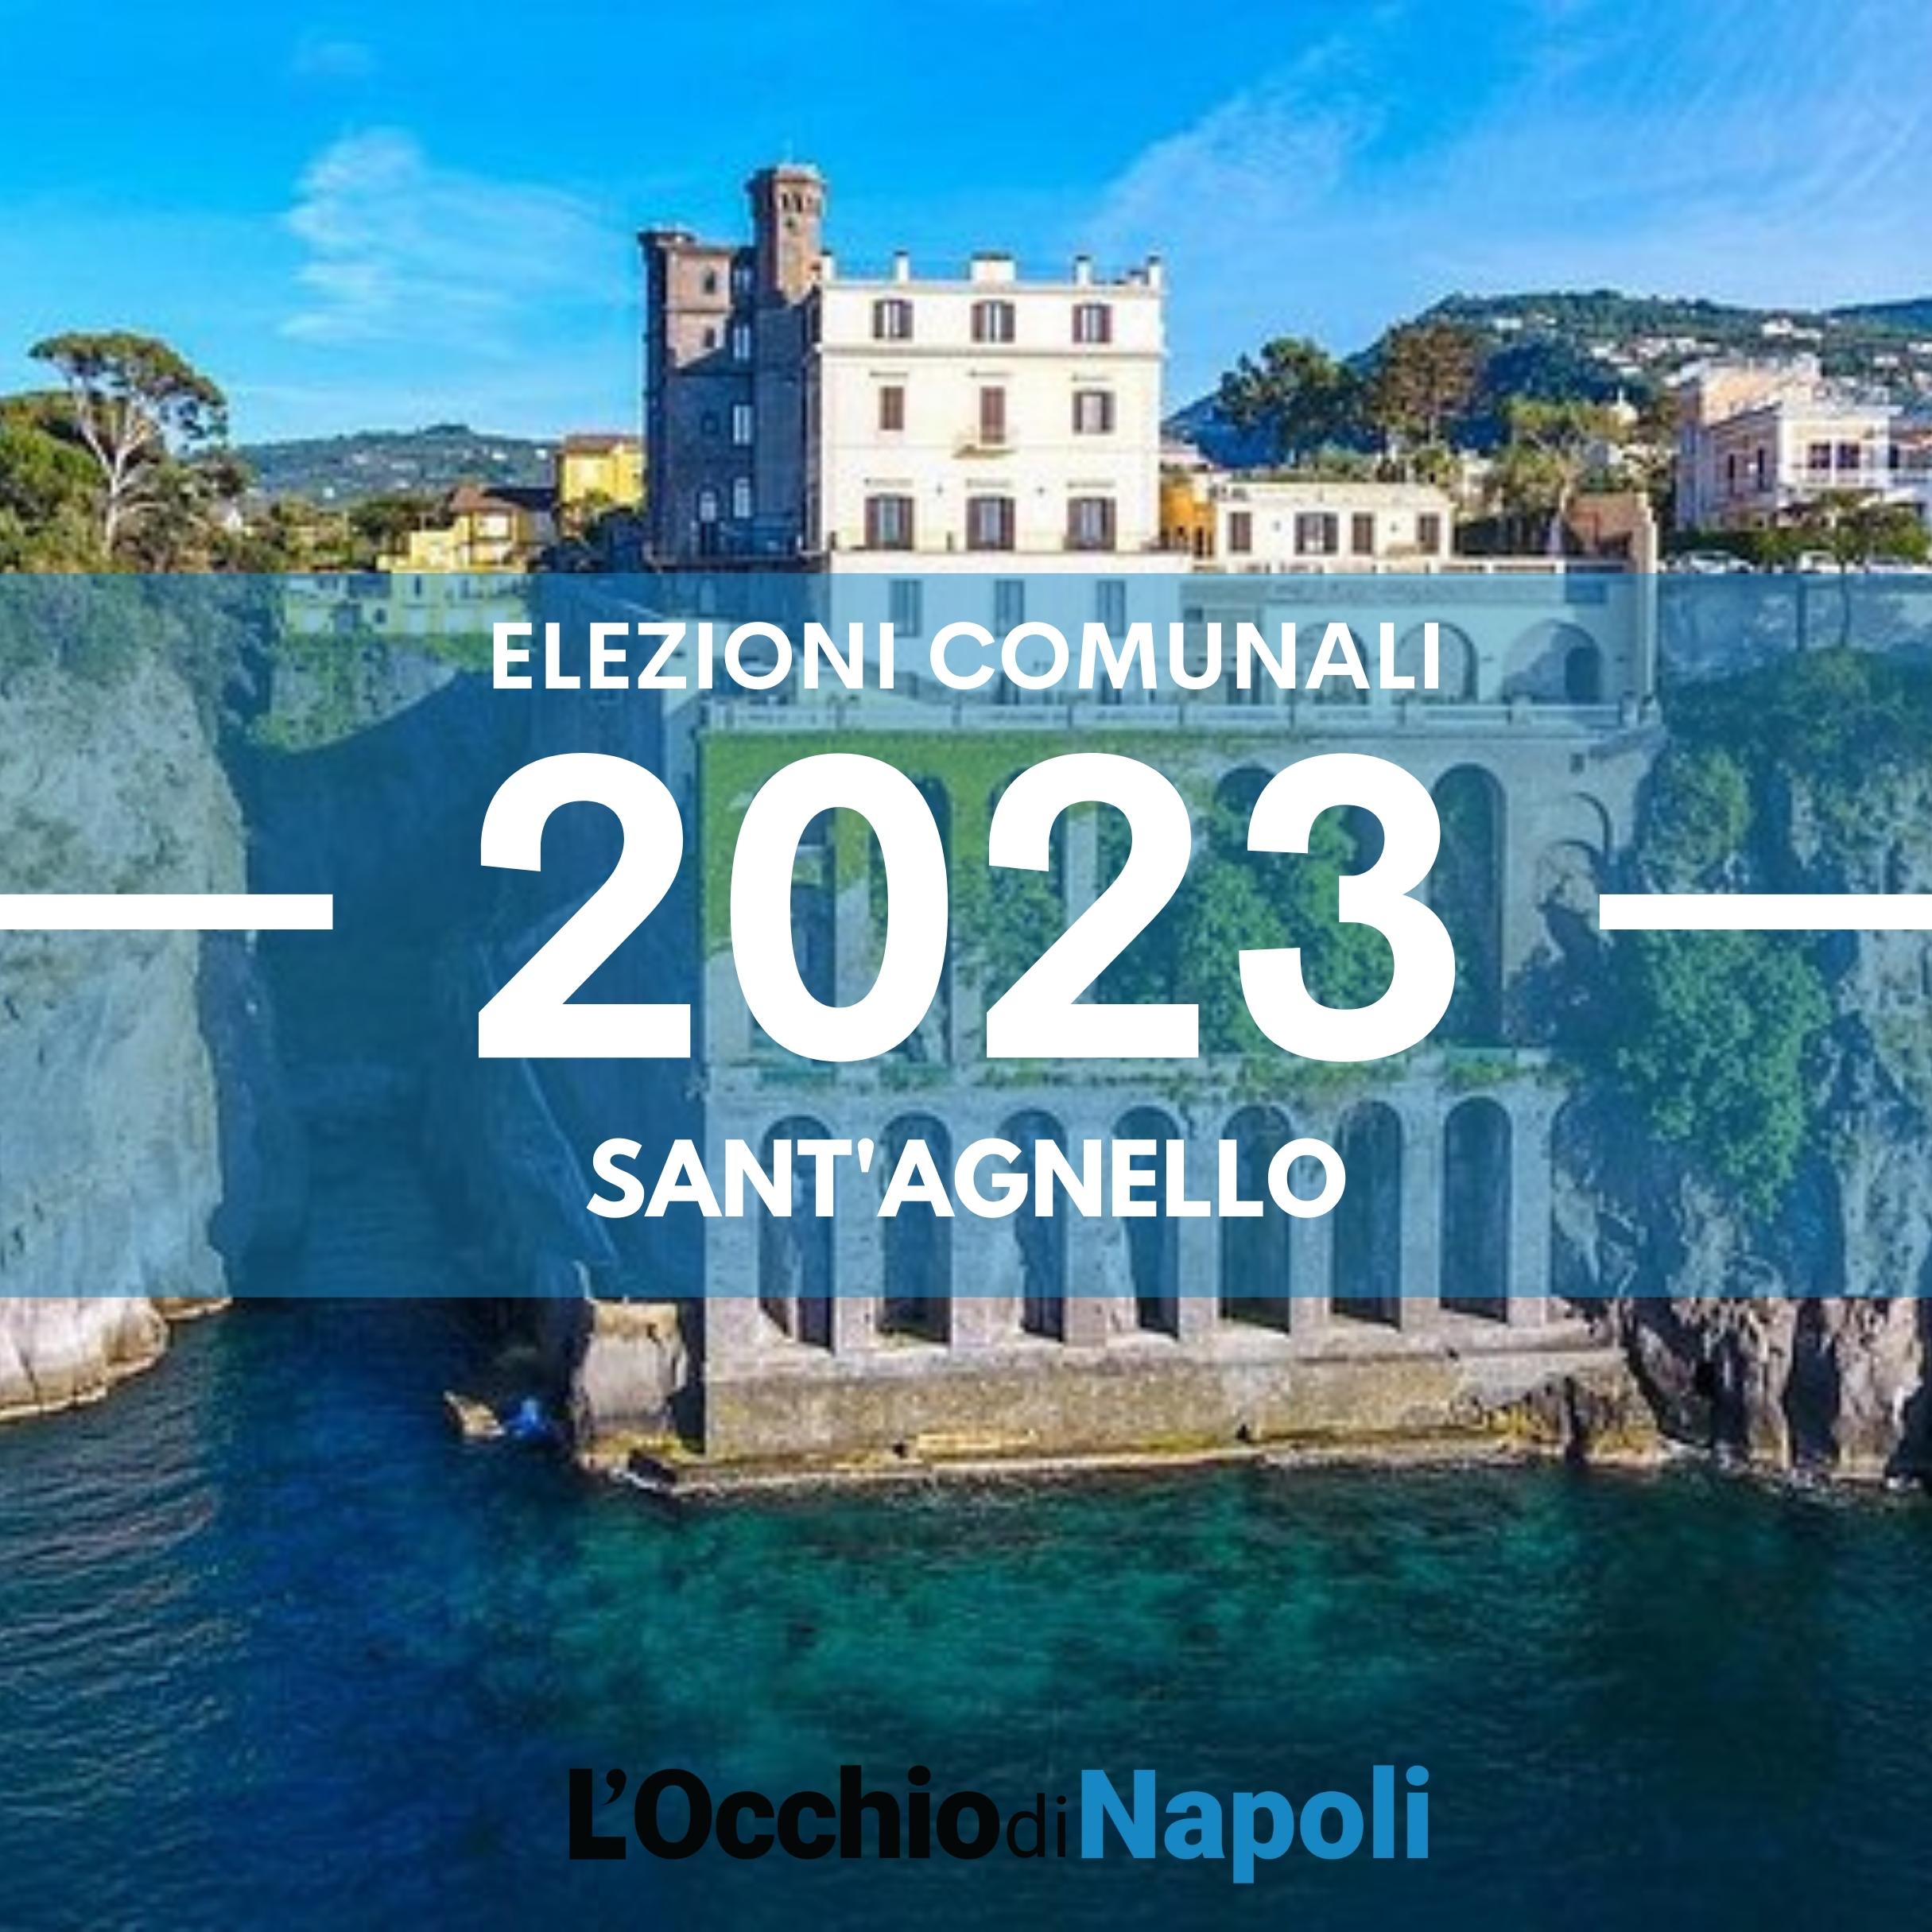 Elezioni comunali 2023 Sant'Agnello liste candidati